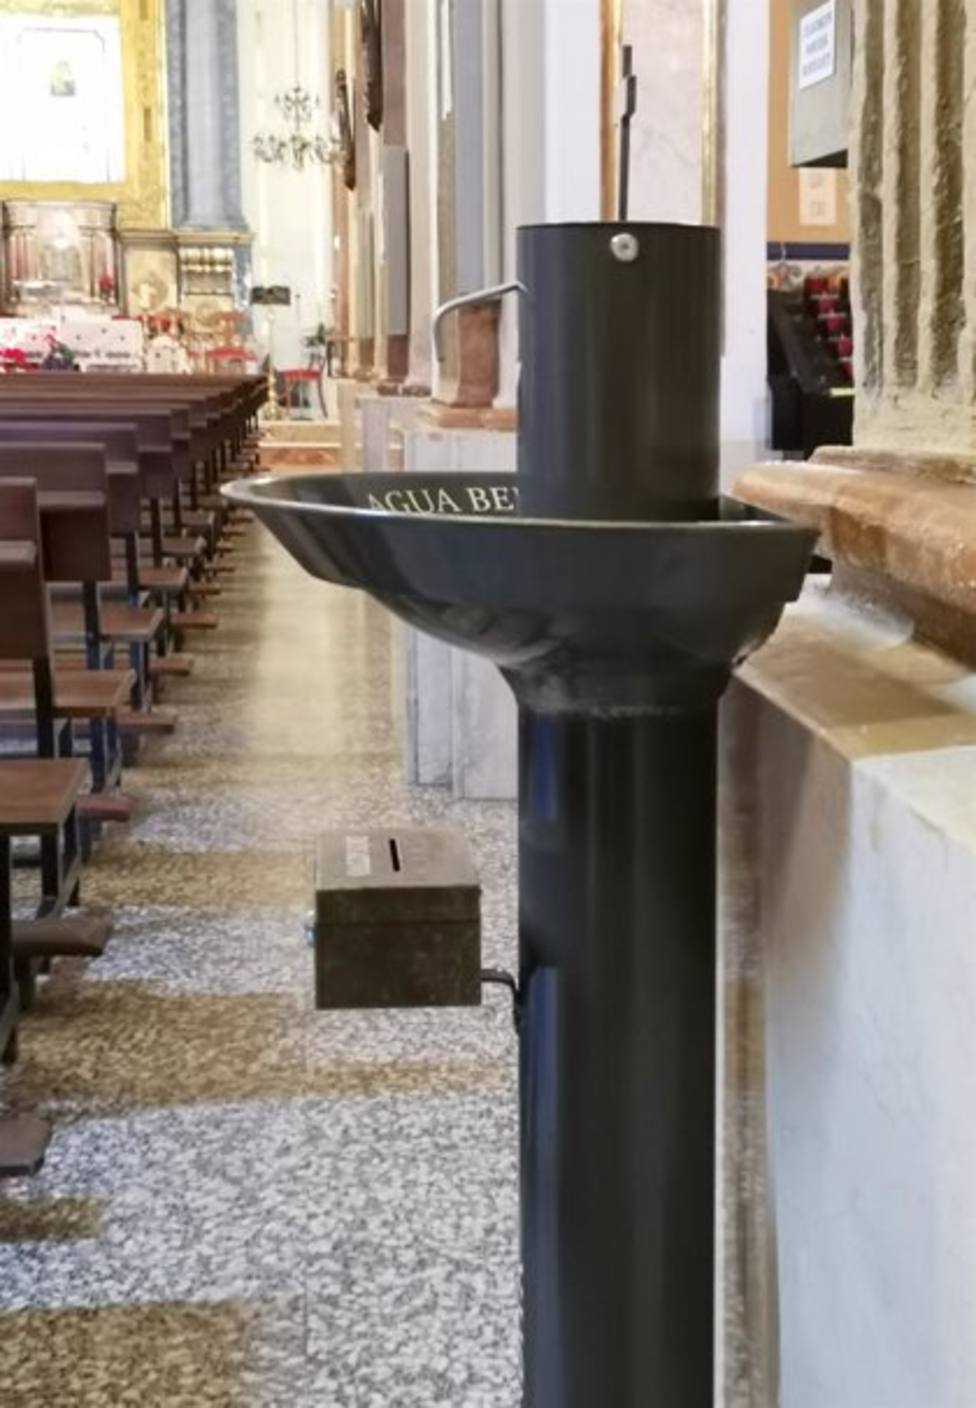 La iglesia de OlÃ­as se equipara a FÃ¡tima y Lourdes e incorpora un dispensador de agua bendita para evitar contagios